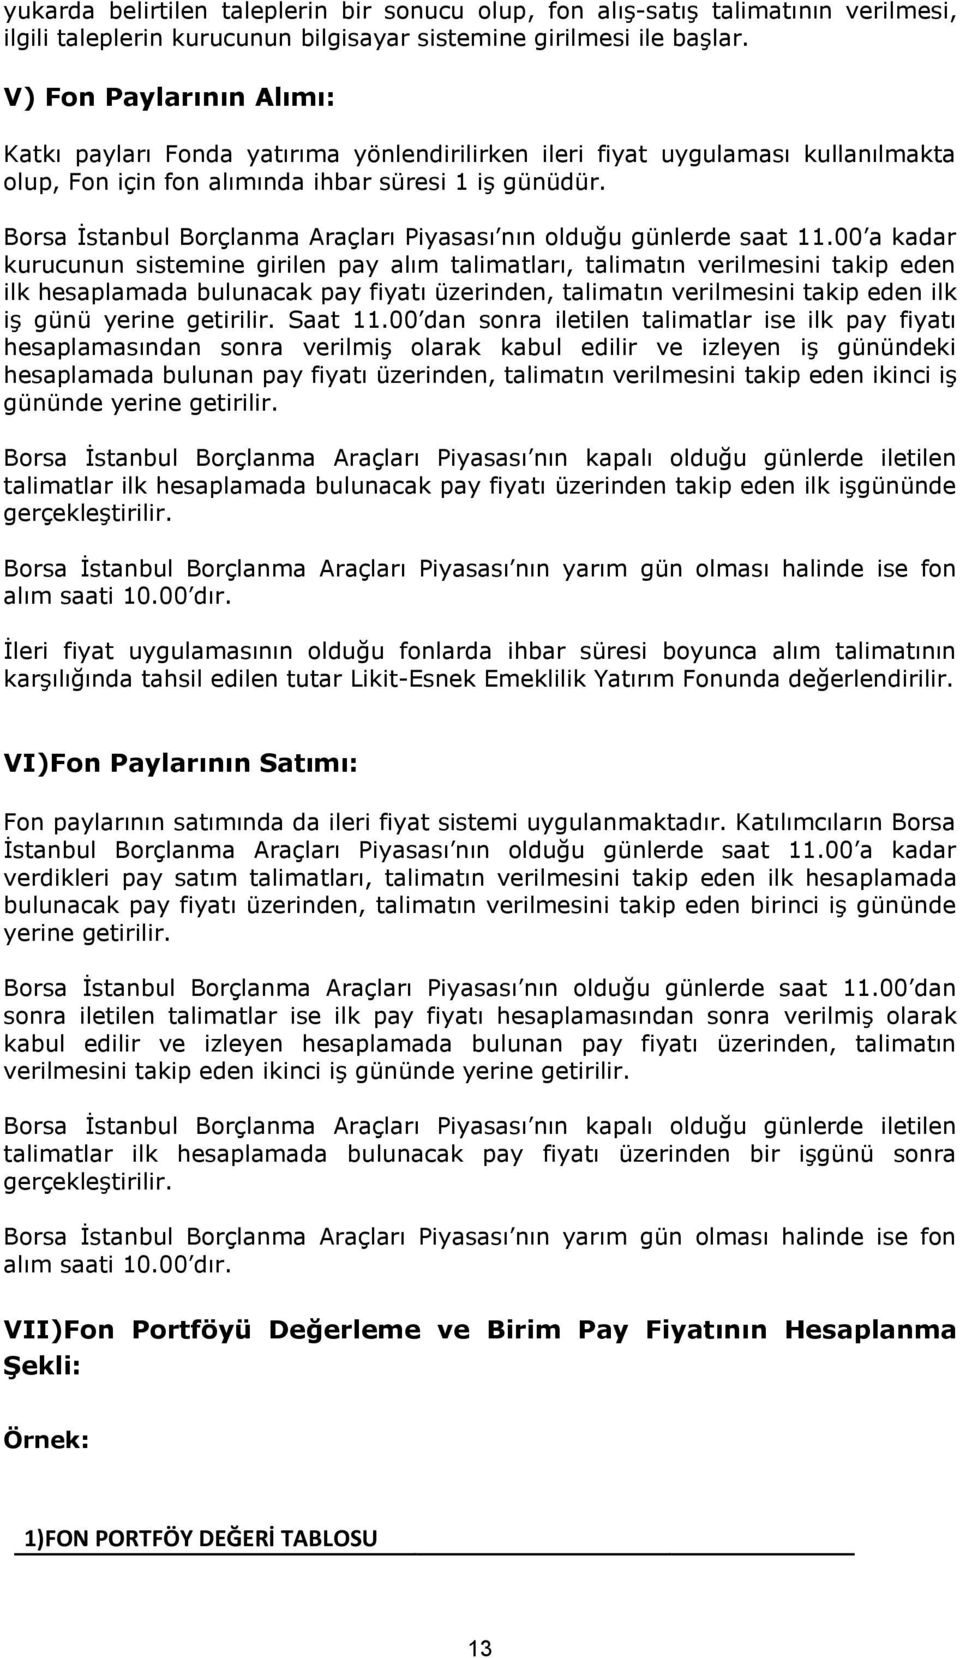 Borsa İstanbul Borçlanma Araçları Piyasası nın olduğu günlerde saat 11.